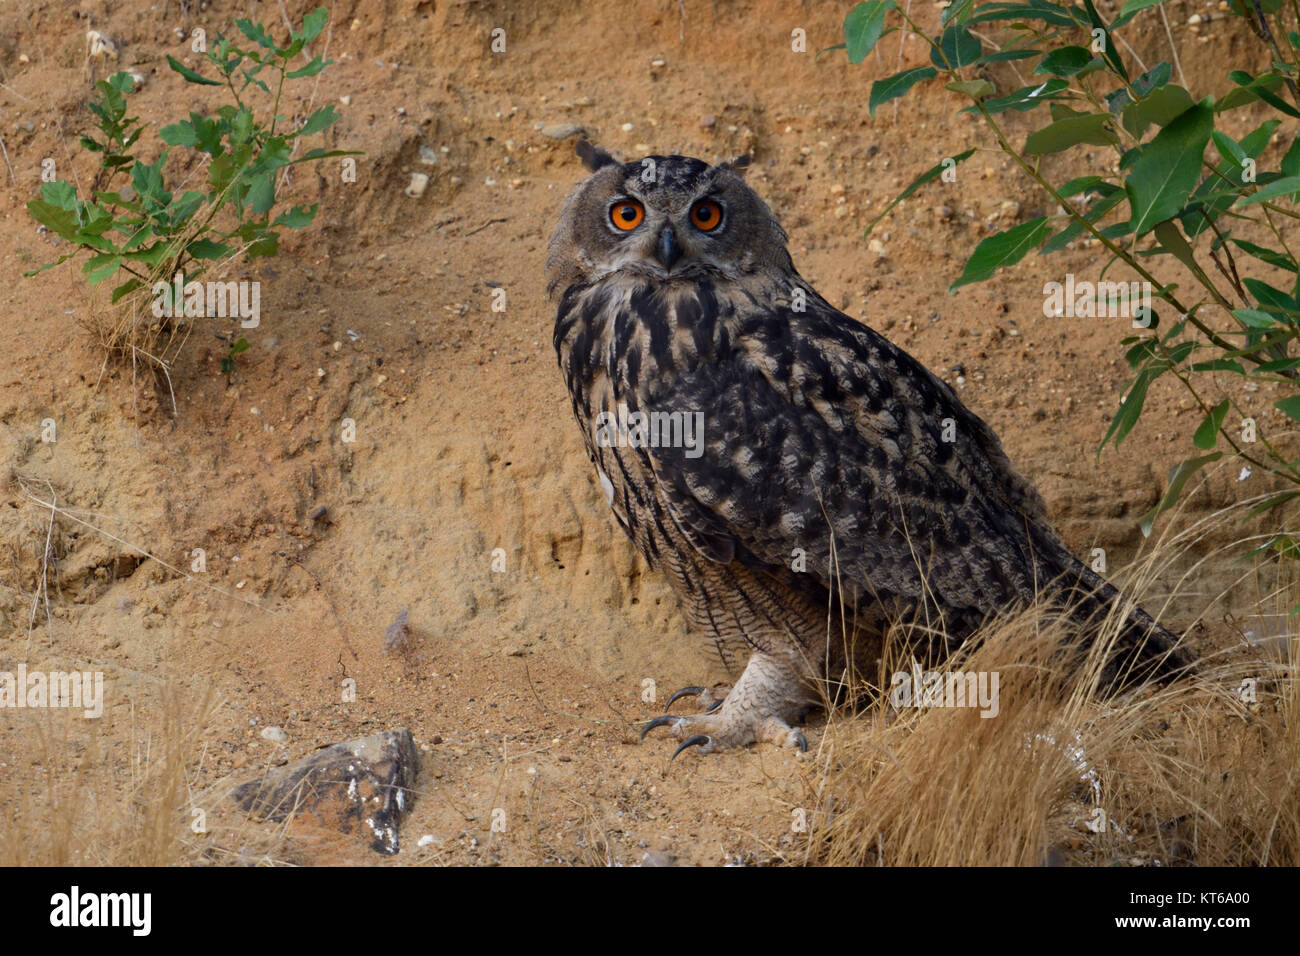 Eagle Owl Bubo bubo ( ), assis, se reposant sous un buisson dans la pente d'une carrière de sable, regarde attentivement vers le photographe, de la faune, de l'Europe. Banque D'Images